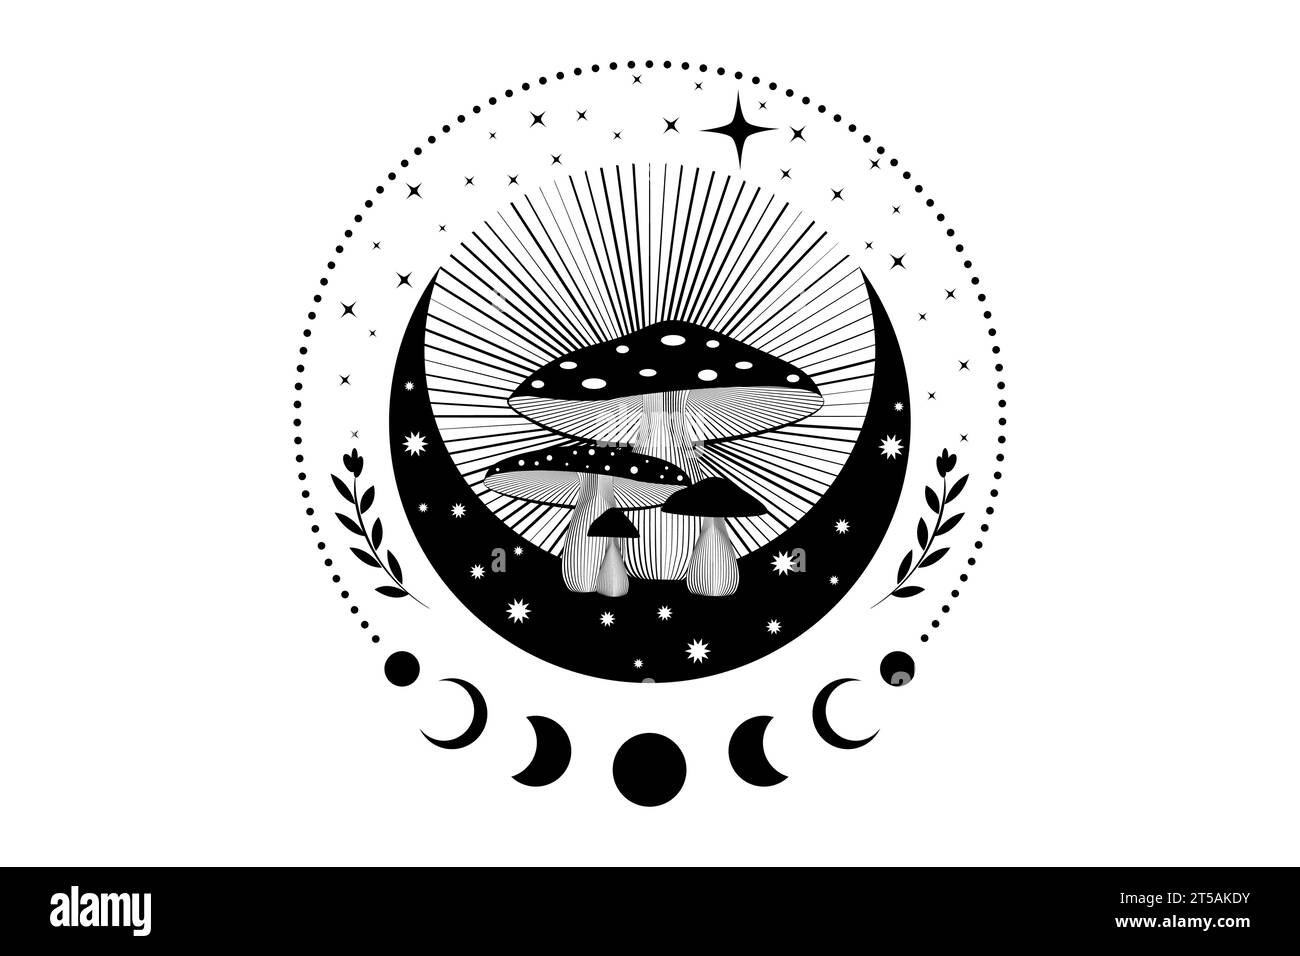 Schamanische Zauberpilze, mystische Amanita muscaria mit Mondphasen und Sternen. Hexerei-Mondsichel-Symbol, Hexenpilz-Logo-Tattoo Stock Vektor